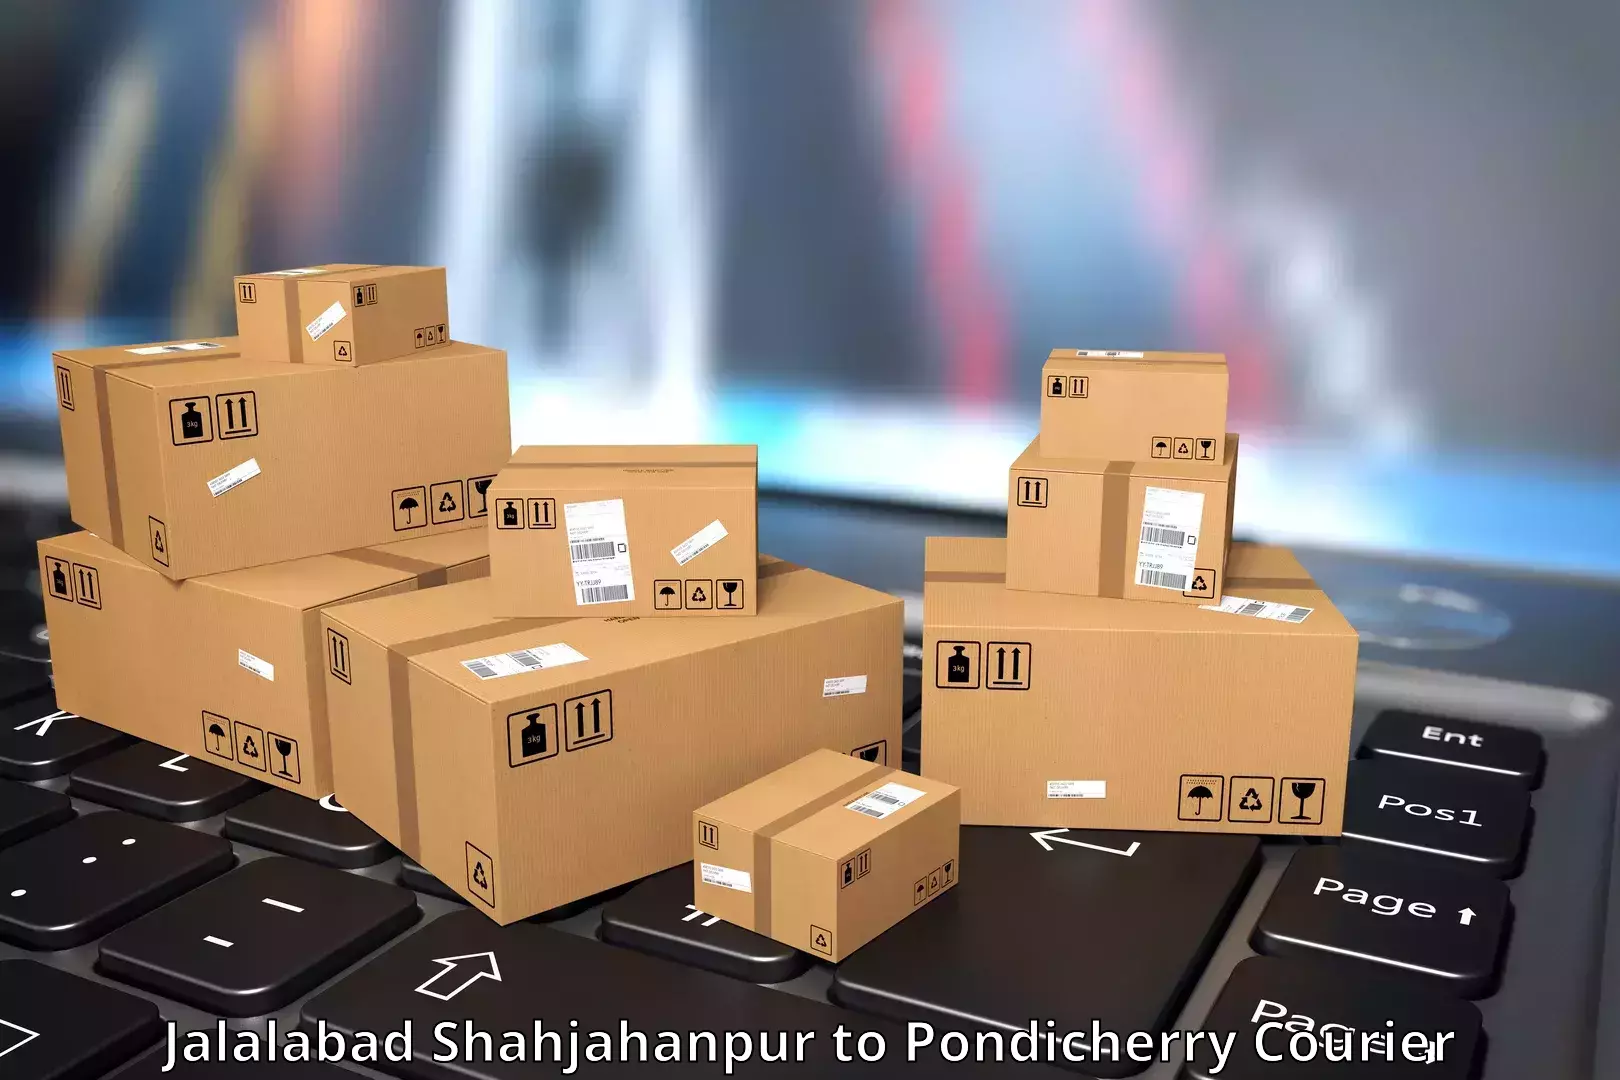 High-capacity shipping options Jalalabad Shahjahanpur to Metttupalayam